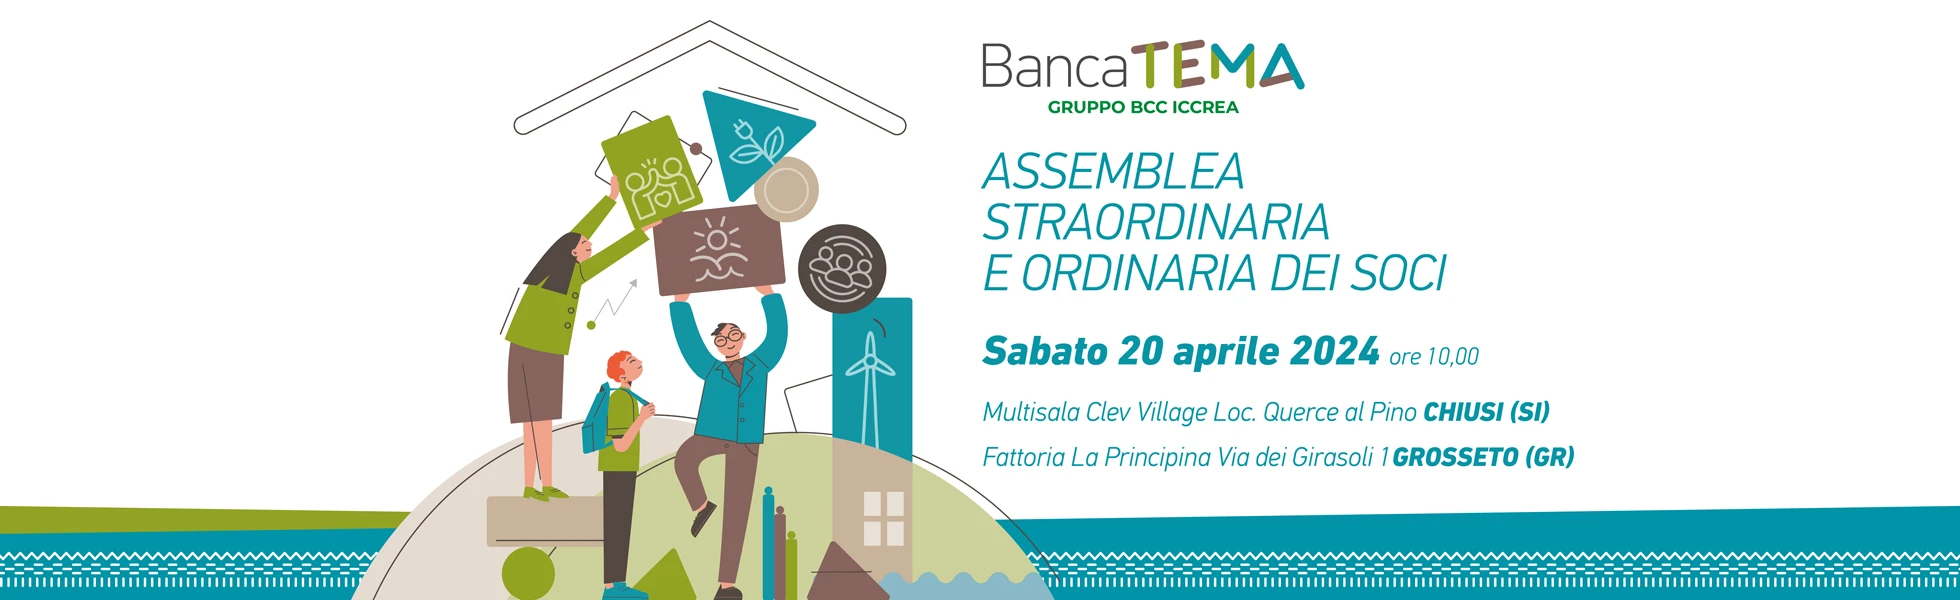 Banca TEMA - Assemblea Soci 2024 - Banner